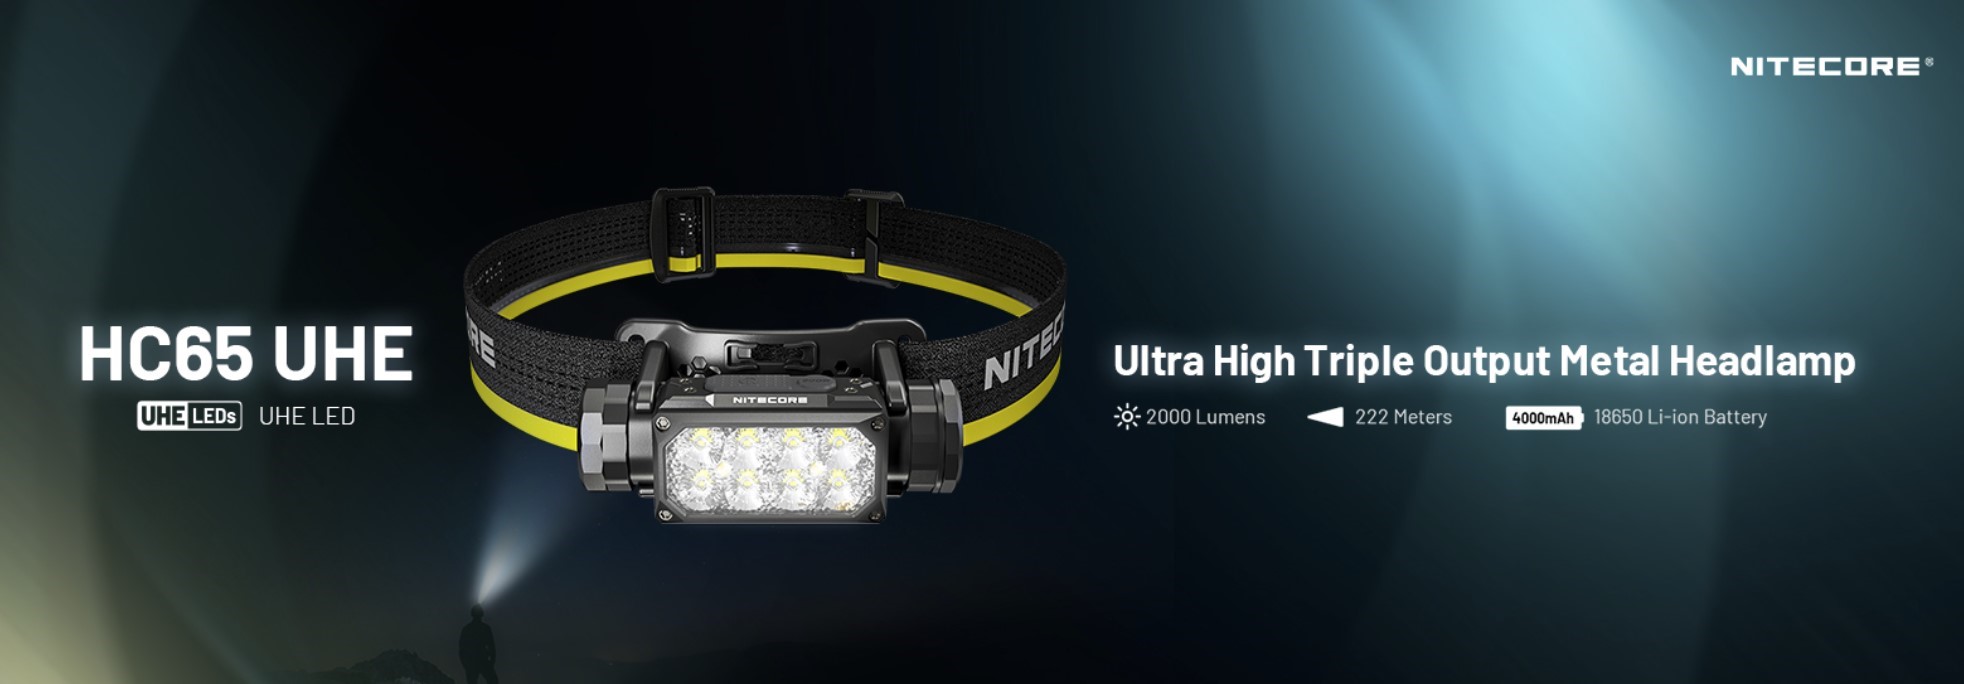 NITECORE HC65 UHE 8 x NiteLab UHE LED SvetelnaPosta